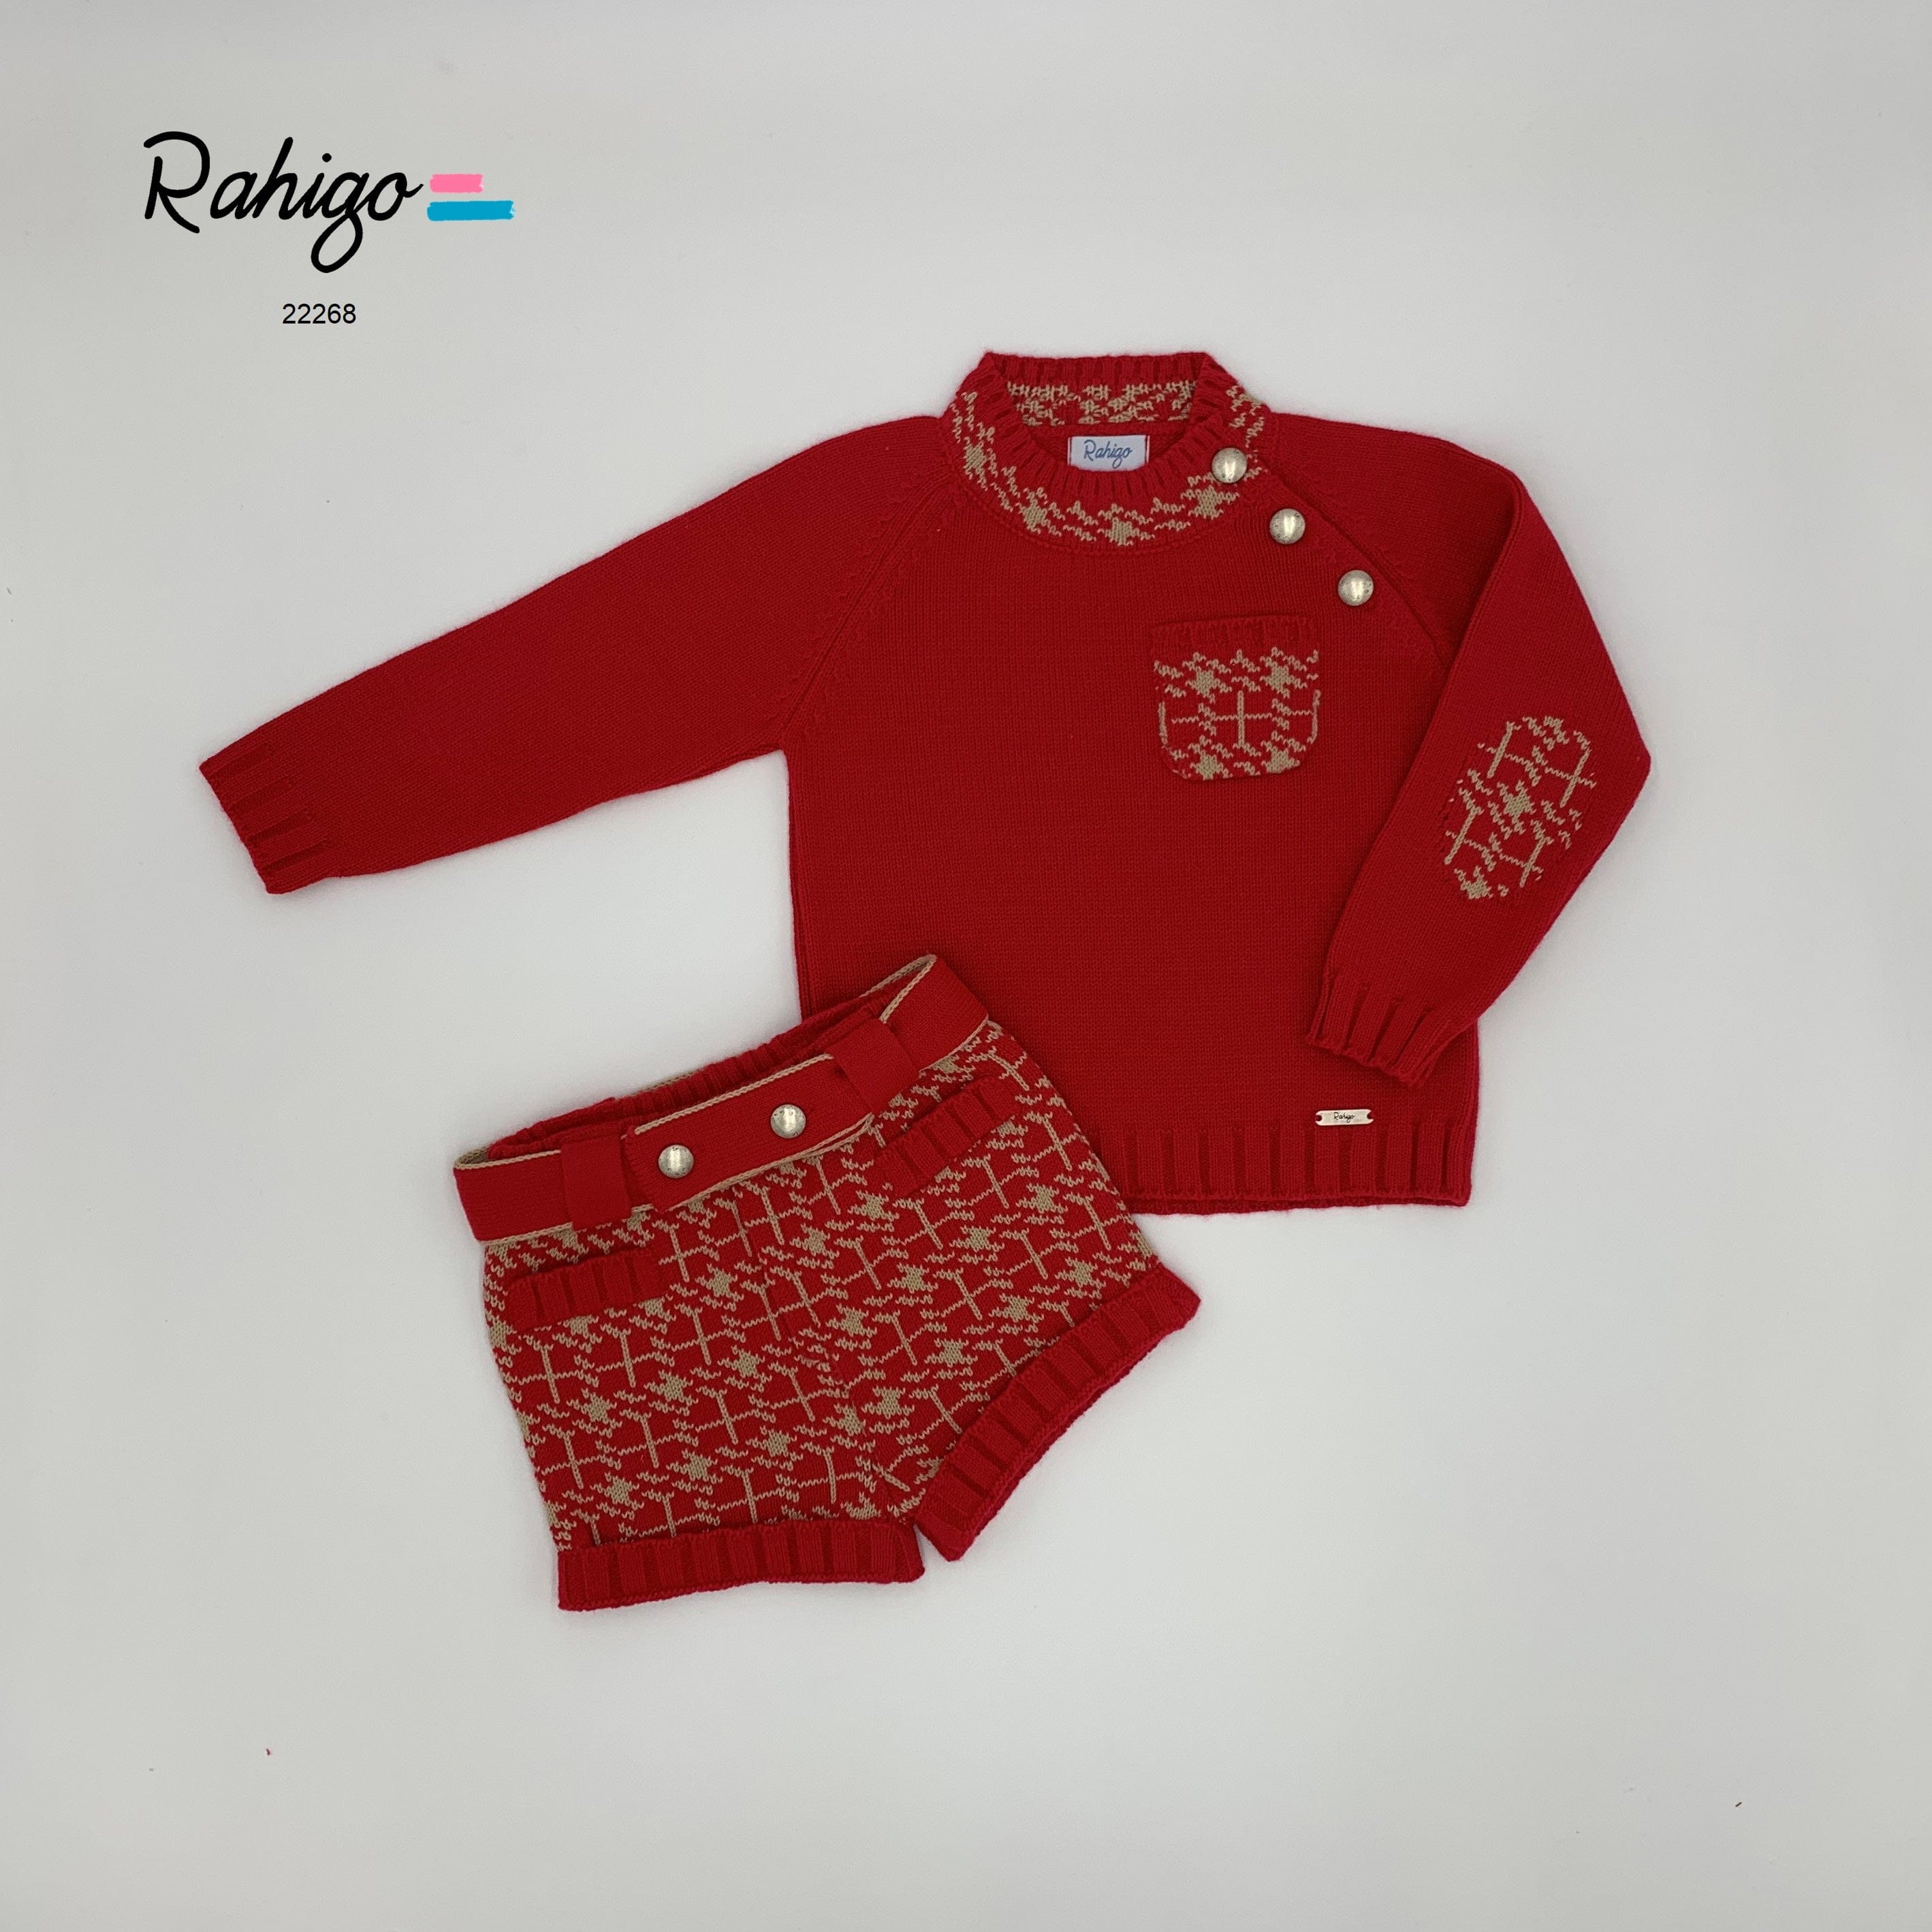 Rahigo - Three Piece Short Set With Camel Trim -  Red